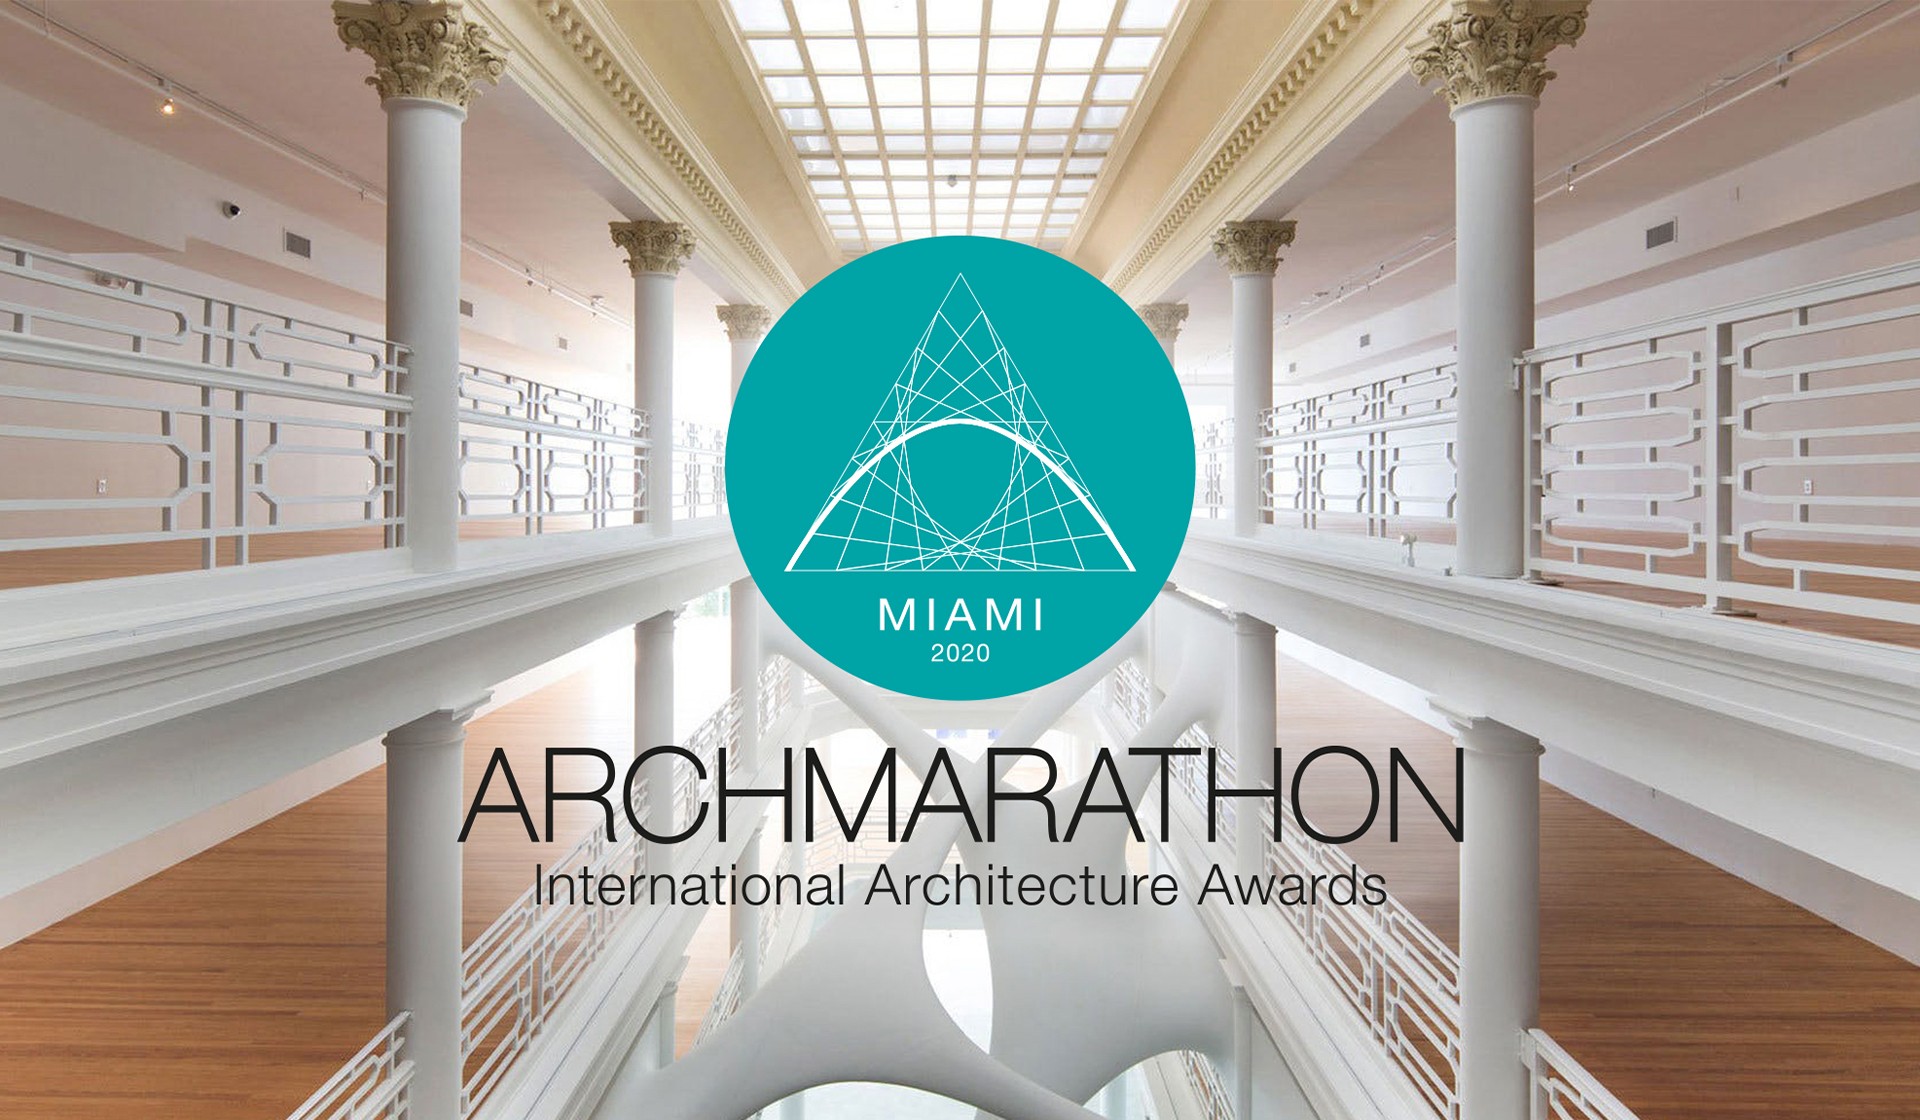 Archmarathon Award Miami 2020